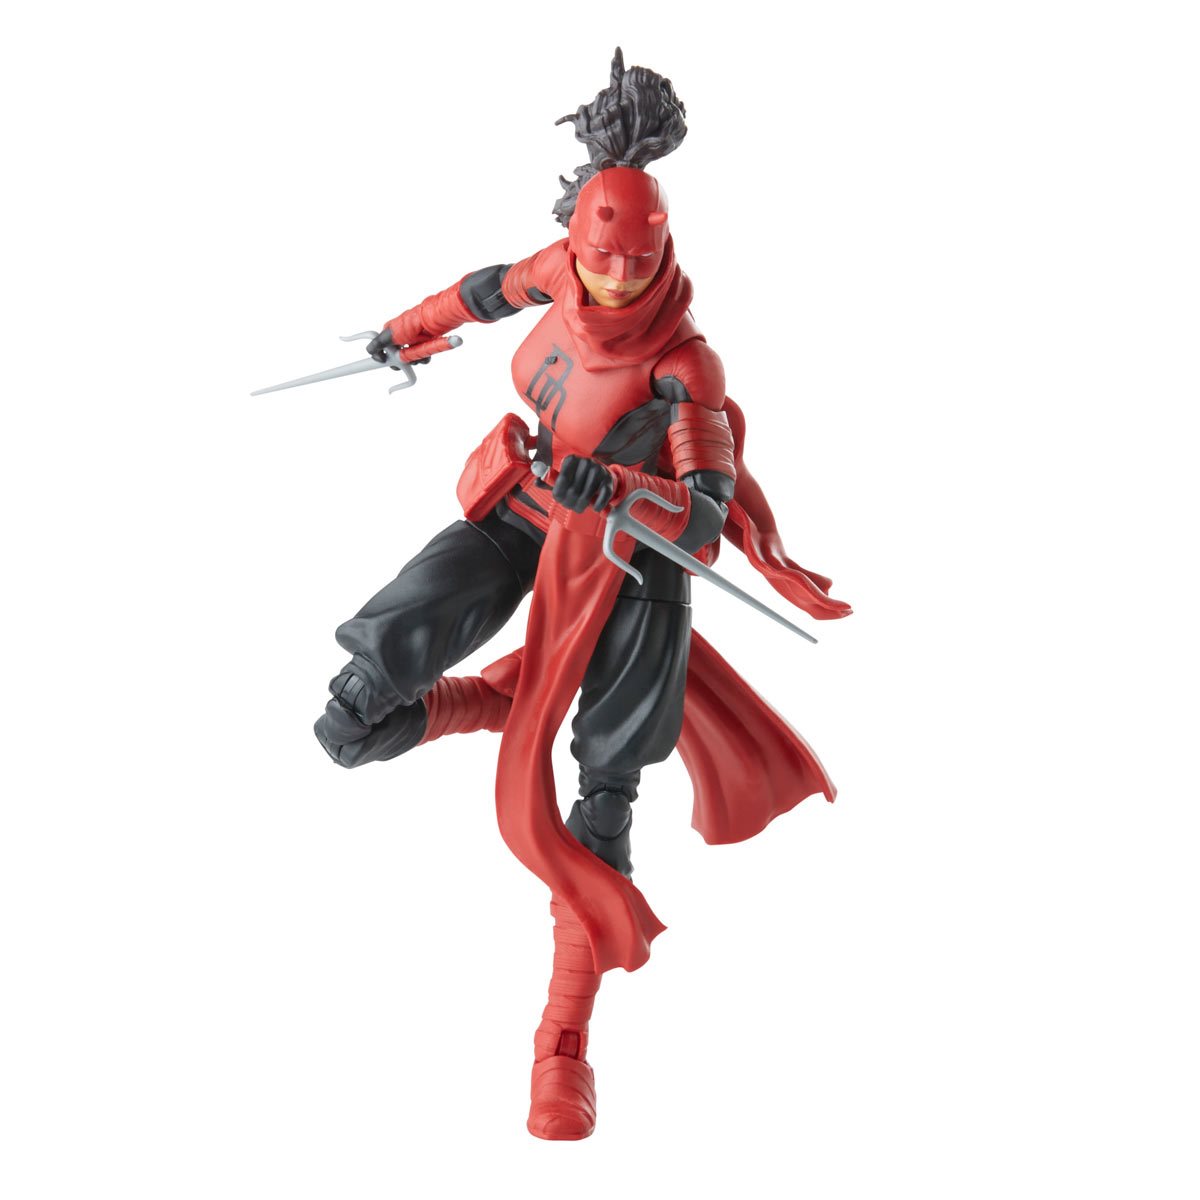 Marvel Legends Spider-Man - Elektra Daredevil Action Figure Toy